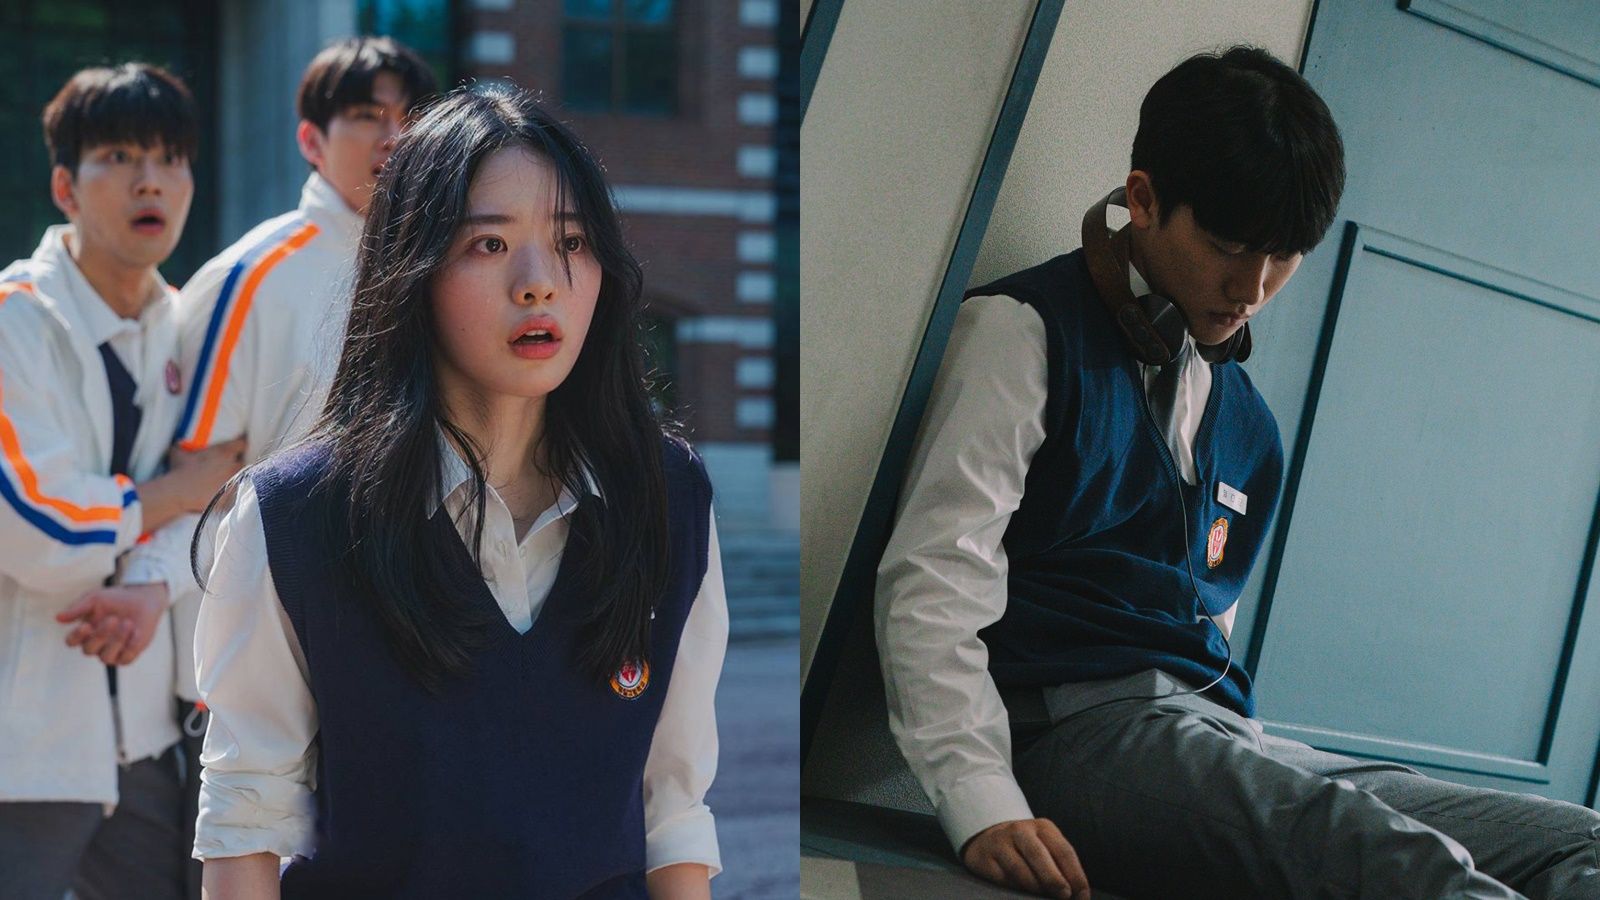 Phim học đường Hàn Quốc "Màn đêm kinh hoàng" gây sốt với chủ đề về trò chơi sinh tử - 2